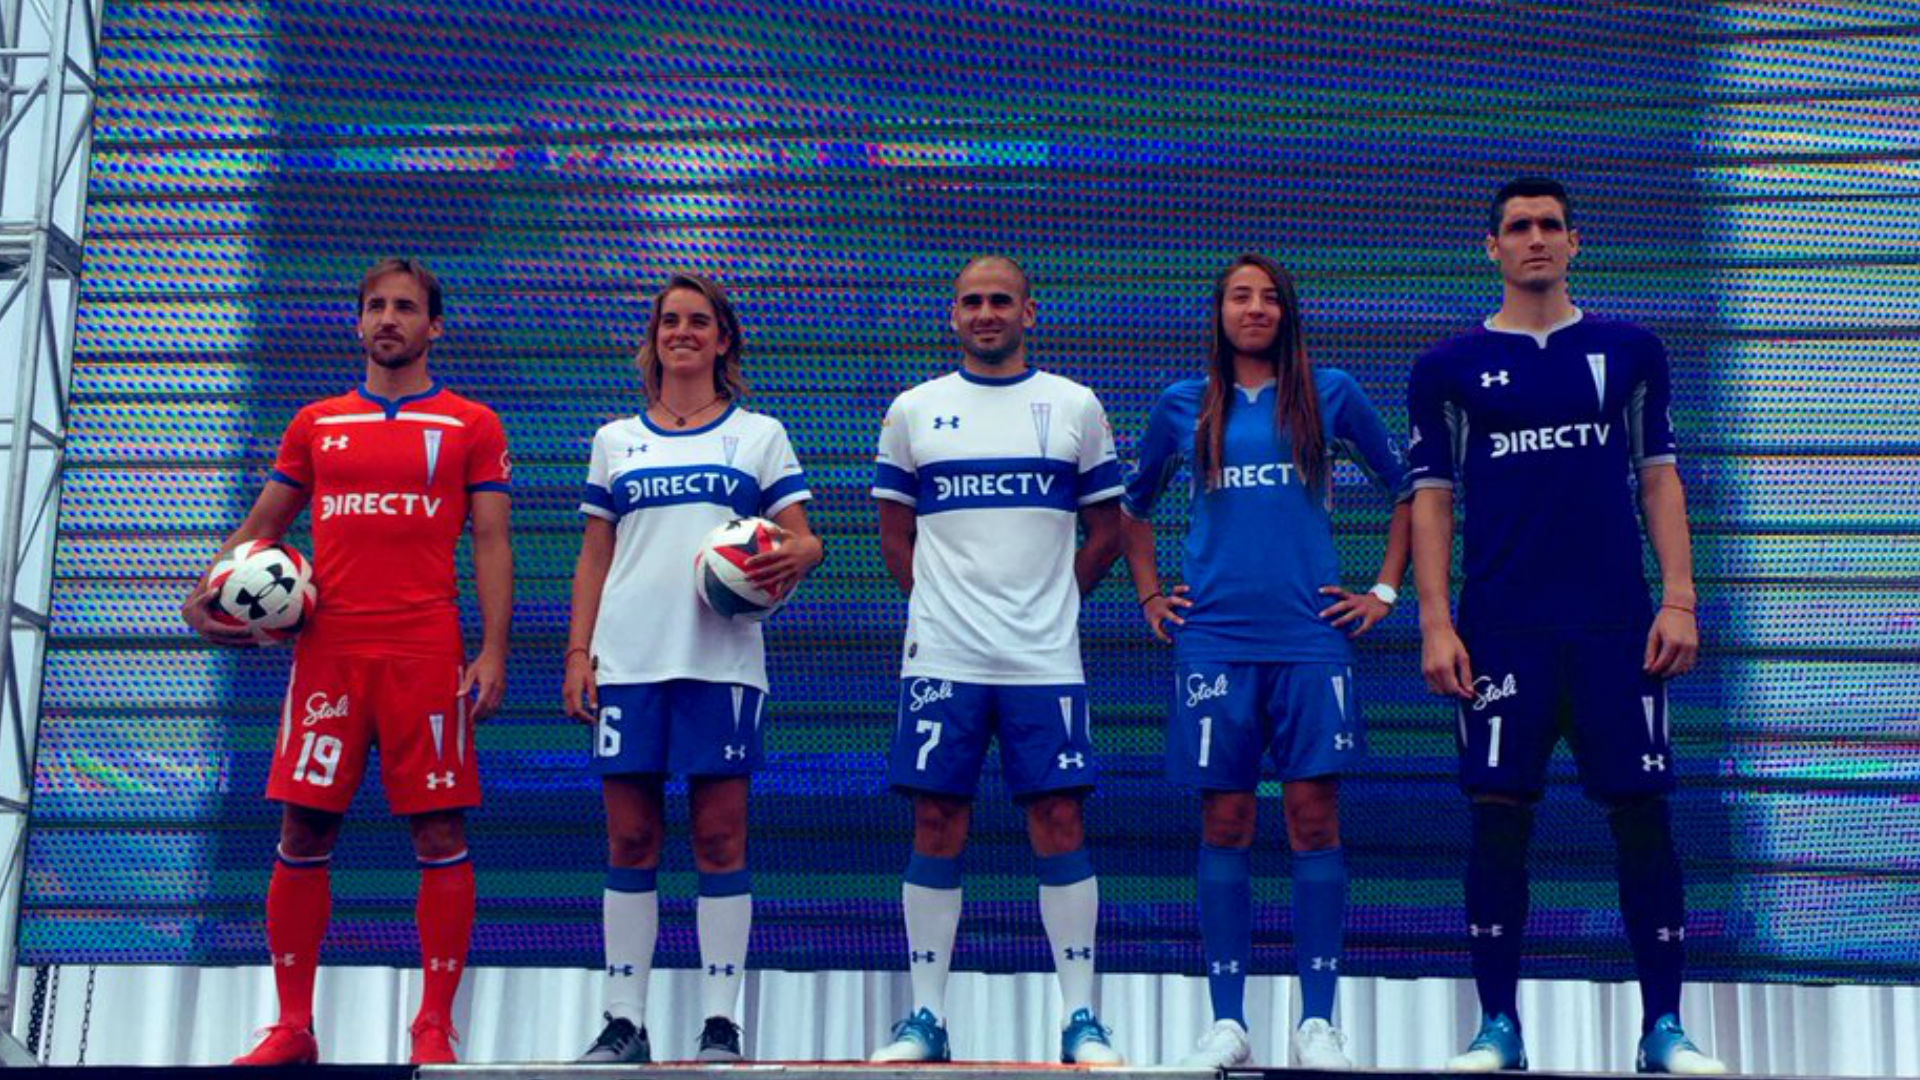 Under Armour, posible marca la camiseta de Boca: de dónde es, equipos viste y cómo son diseños | Goal.com Chile